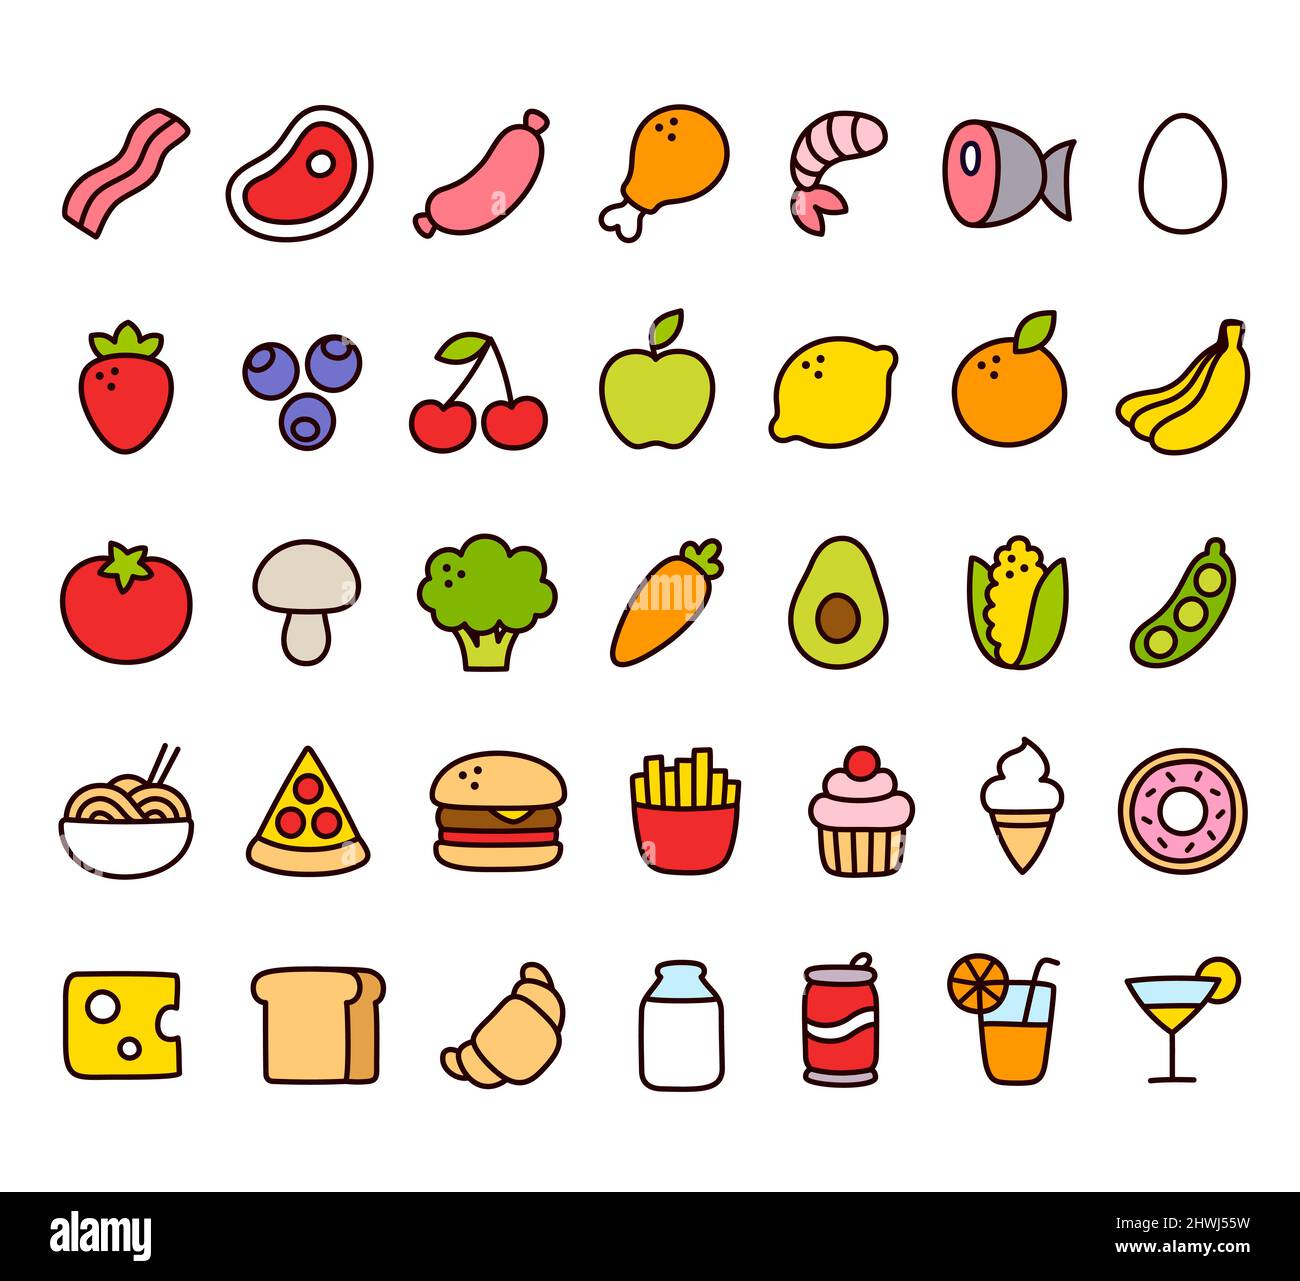 Dessins animés à la main, des icônes de cuisine de style Doodle. Fruits et légumes, viande, fast-food, desserts et boissons. Pictogrammes mignons, jeu d'illustrations vectorielles. Illustration de Vecteur